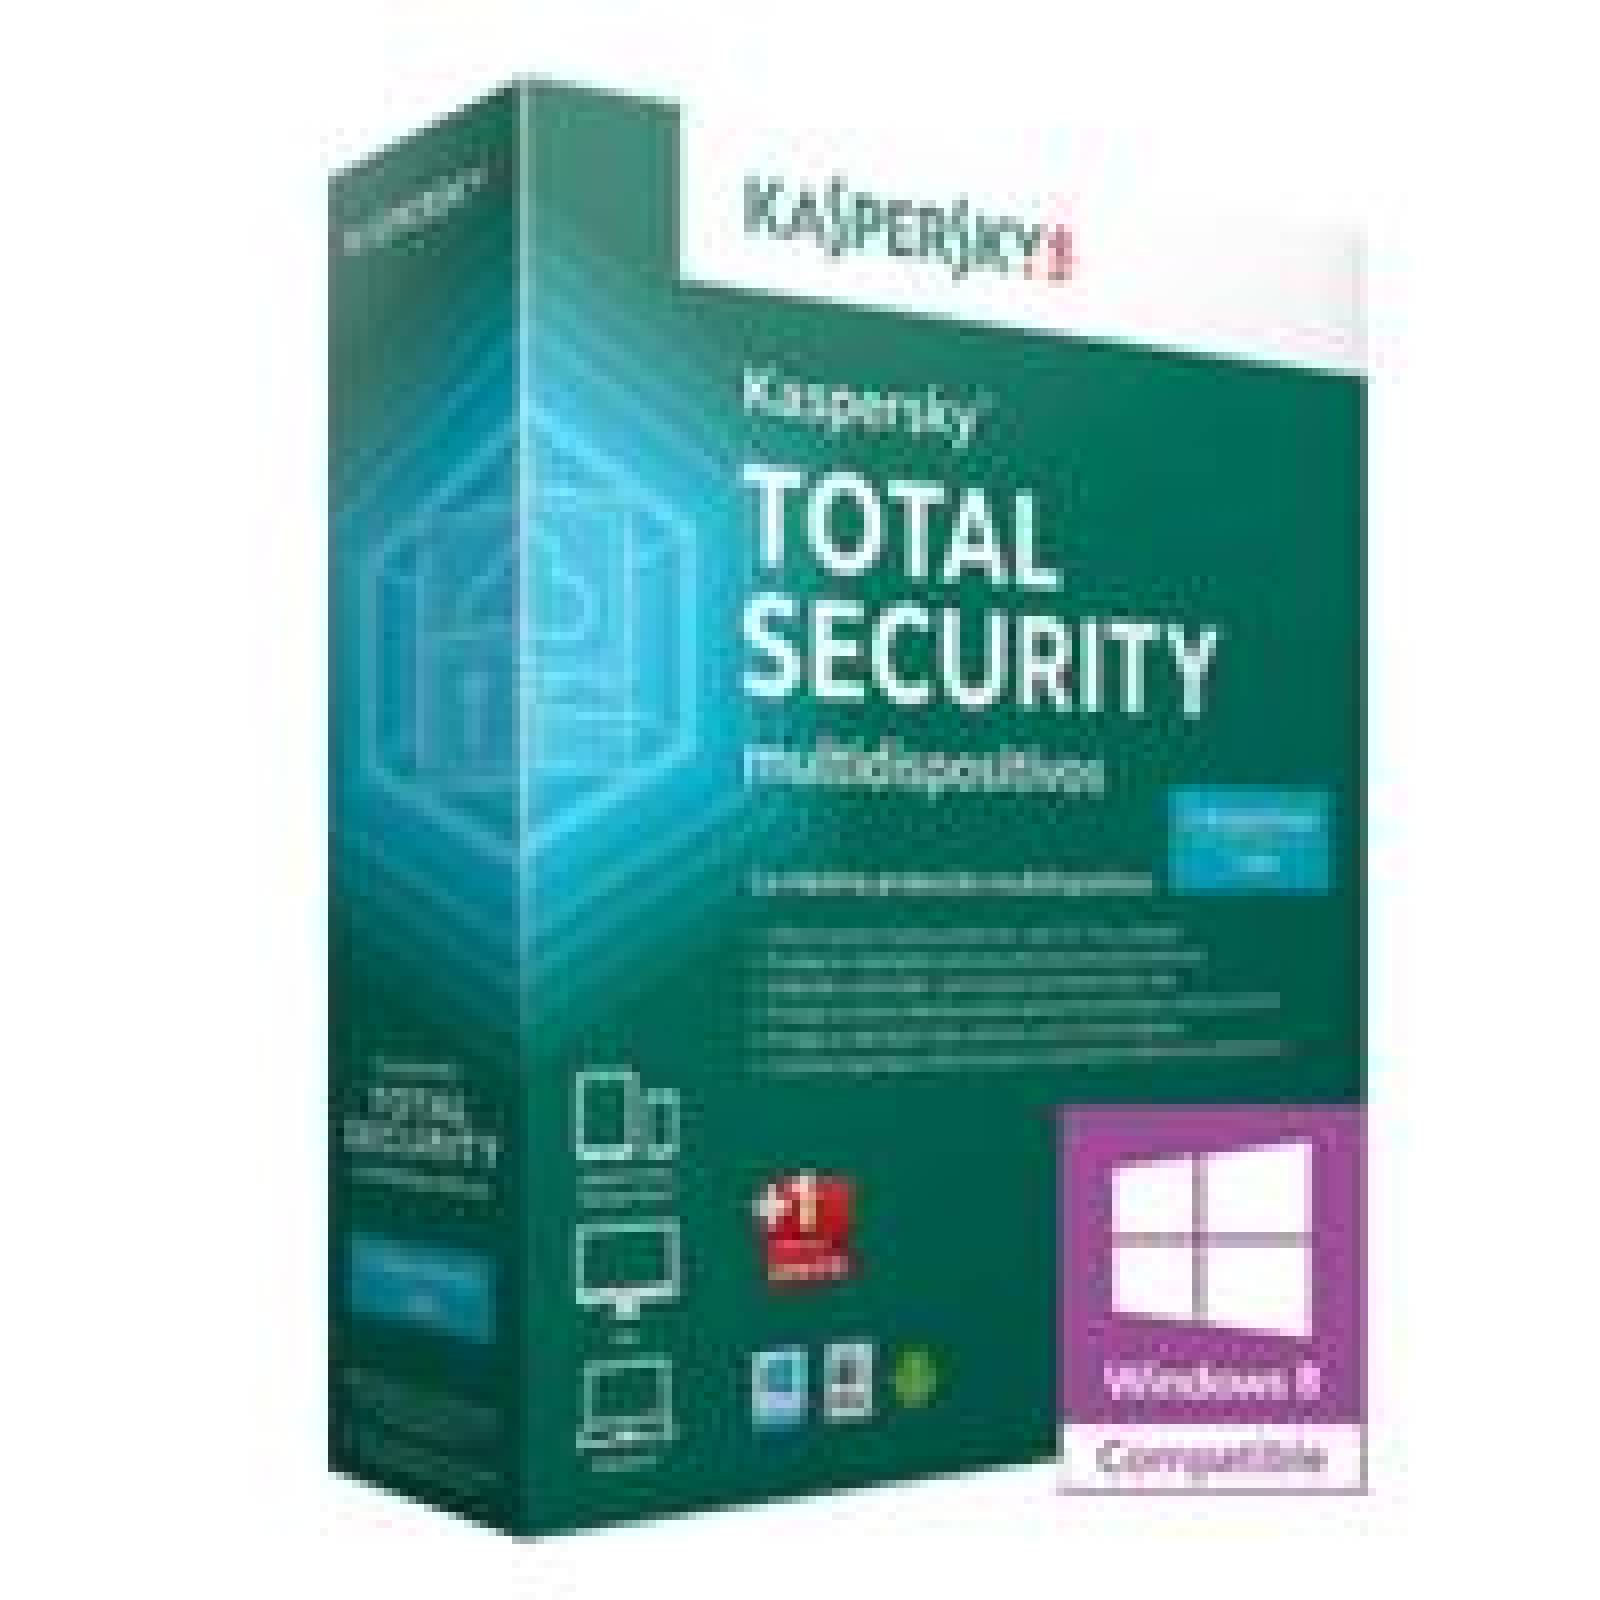 Kaspersky Total Security Multidispositivos 2015 3+1 Usrs 1 A